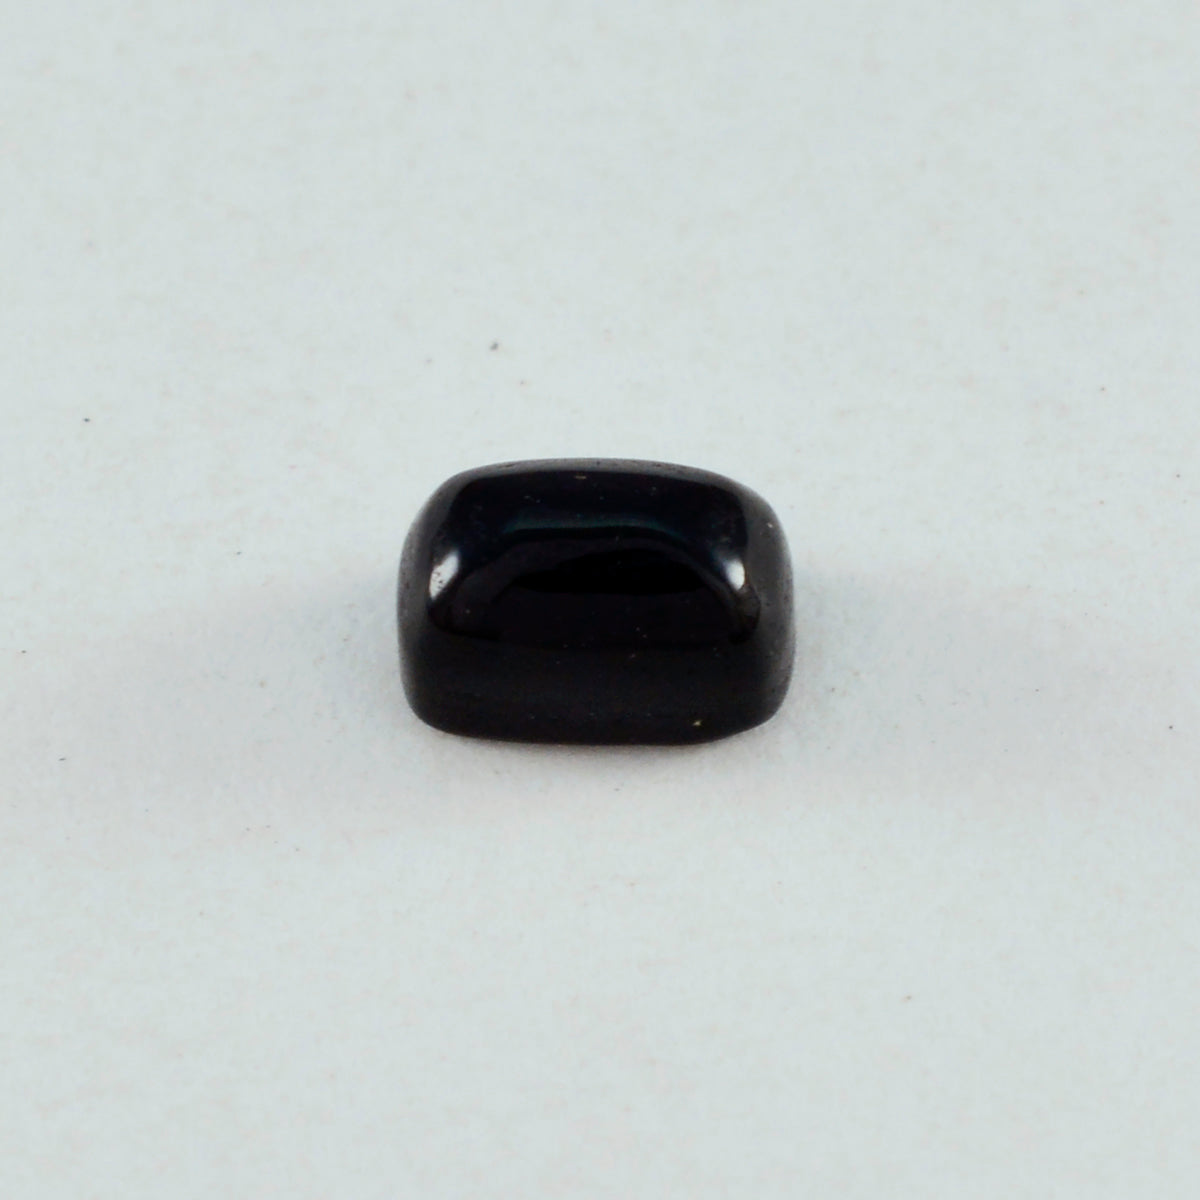 Riyogems 1 cabujón de ónix negro, 8 x 10 mm, forma octágono, piedra preciosa suelta de buena calidad